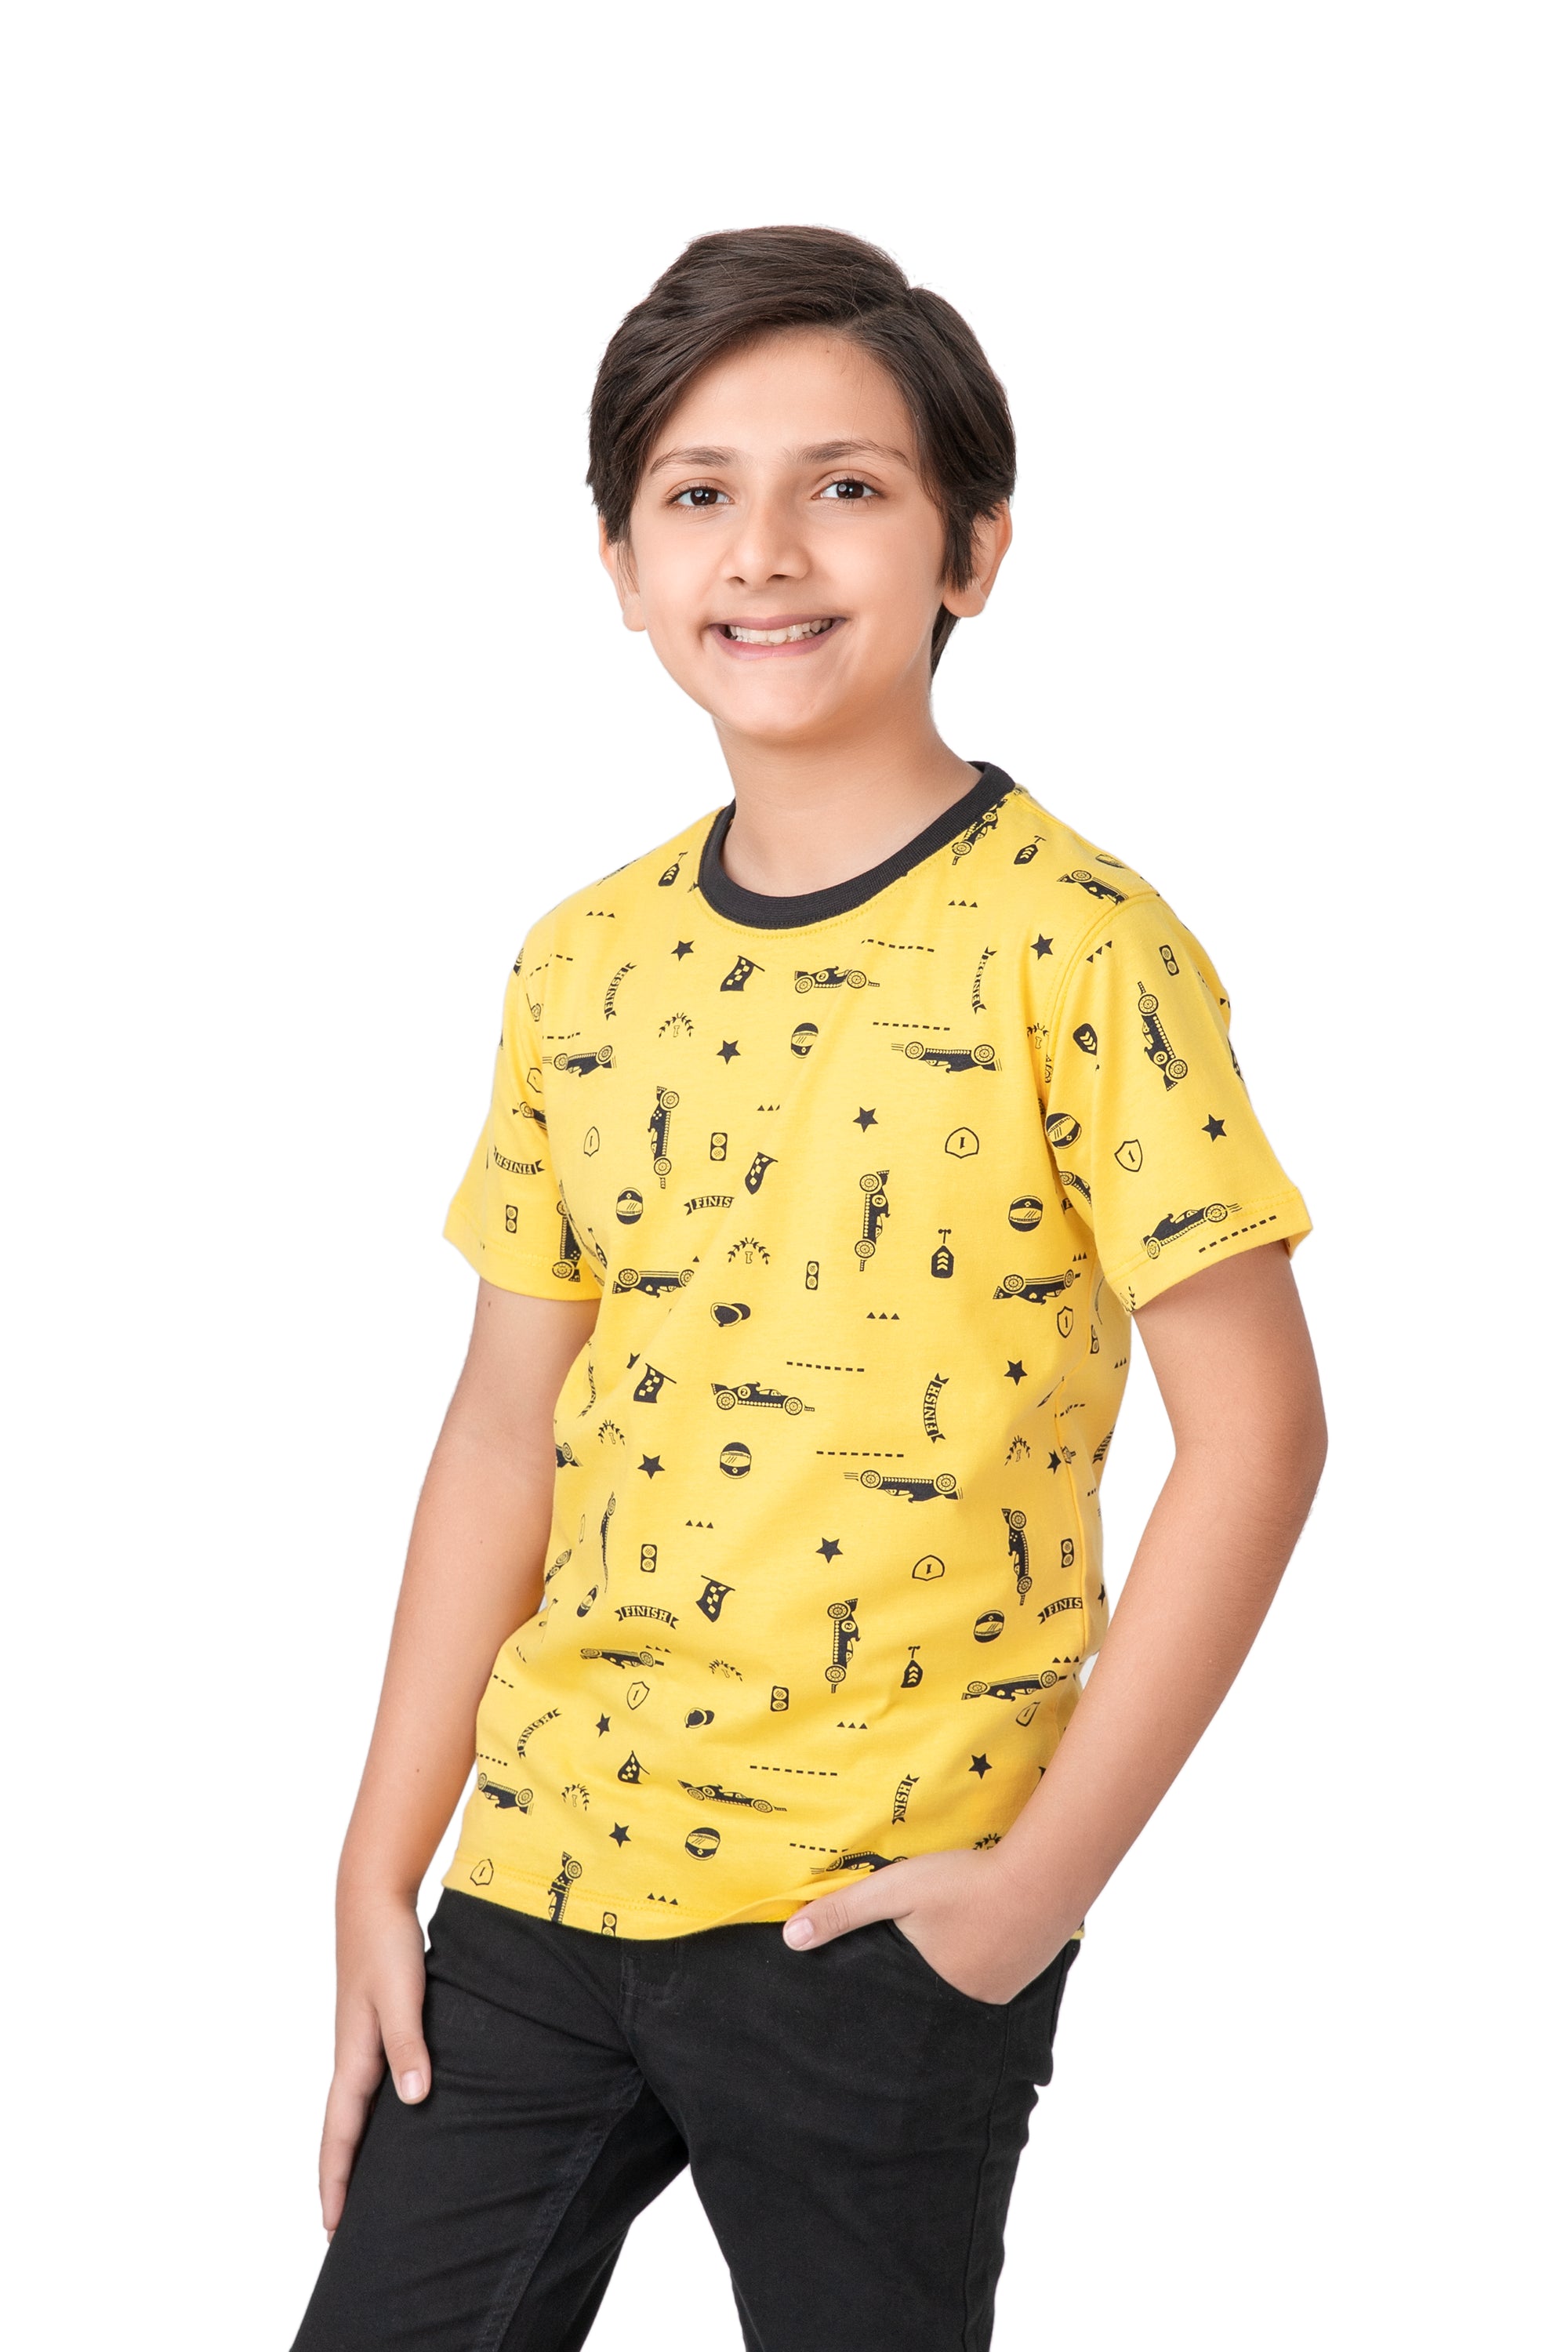 Boys Yellow Racing Car T-shirt